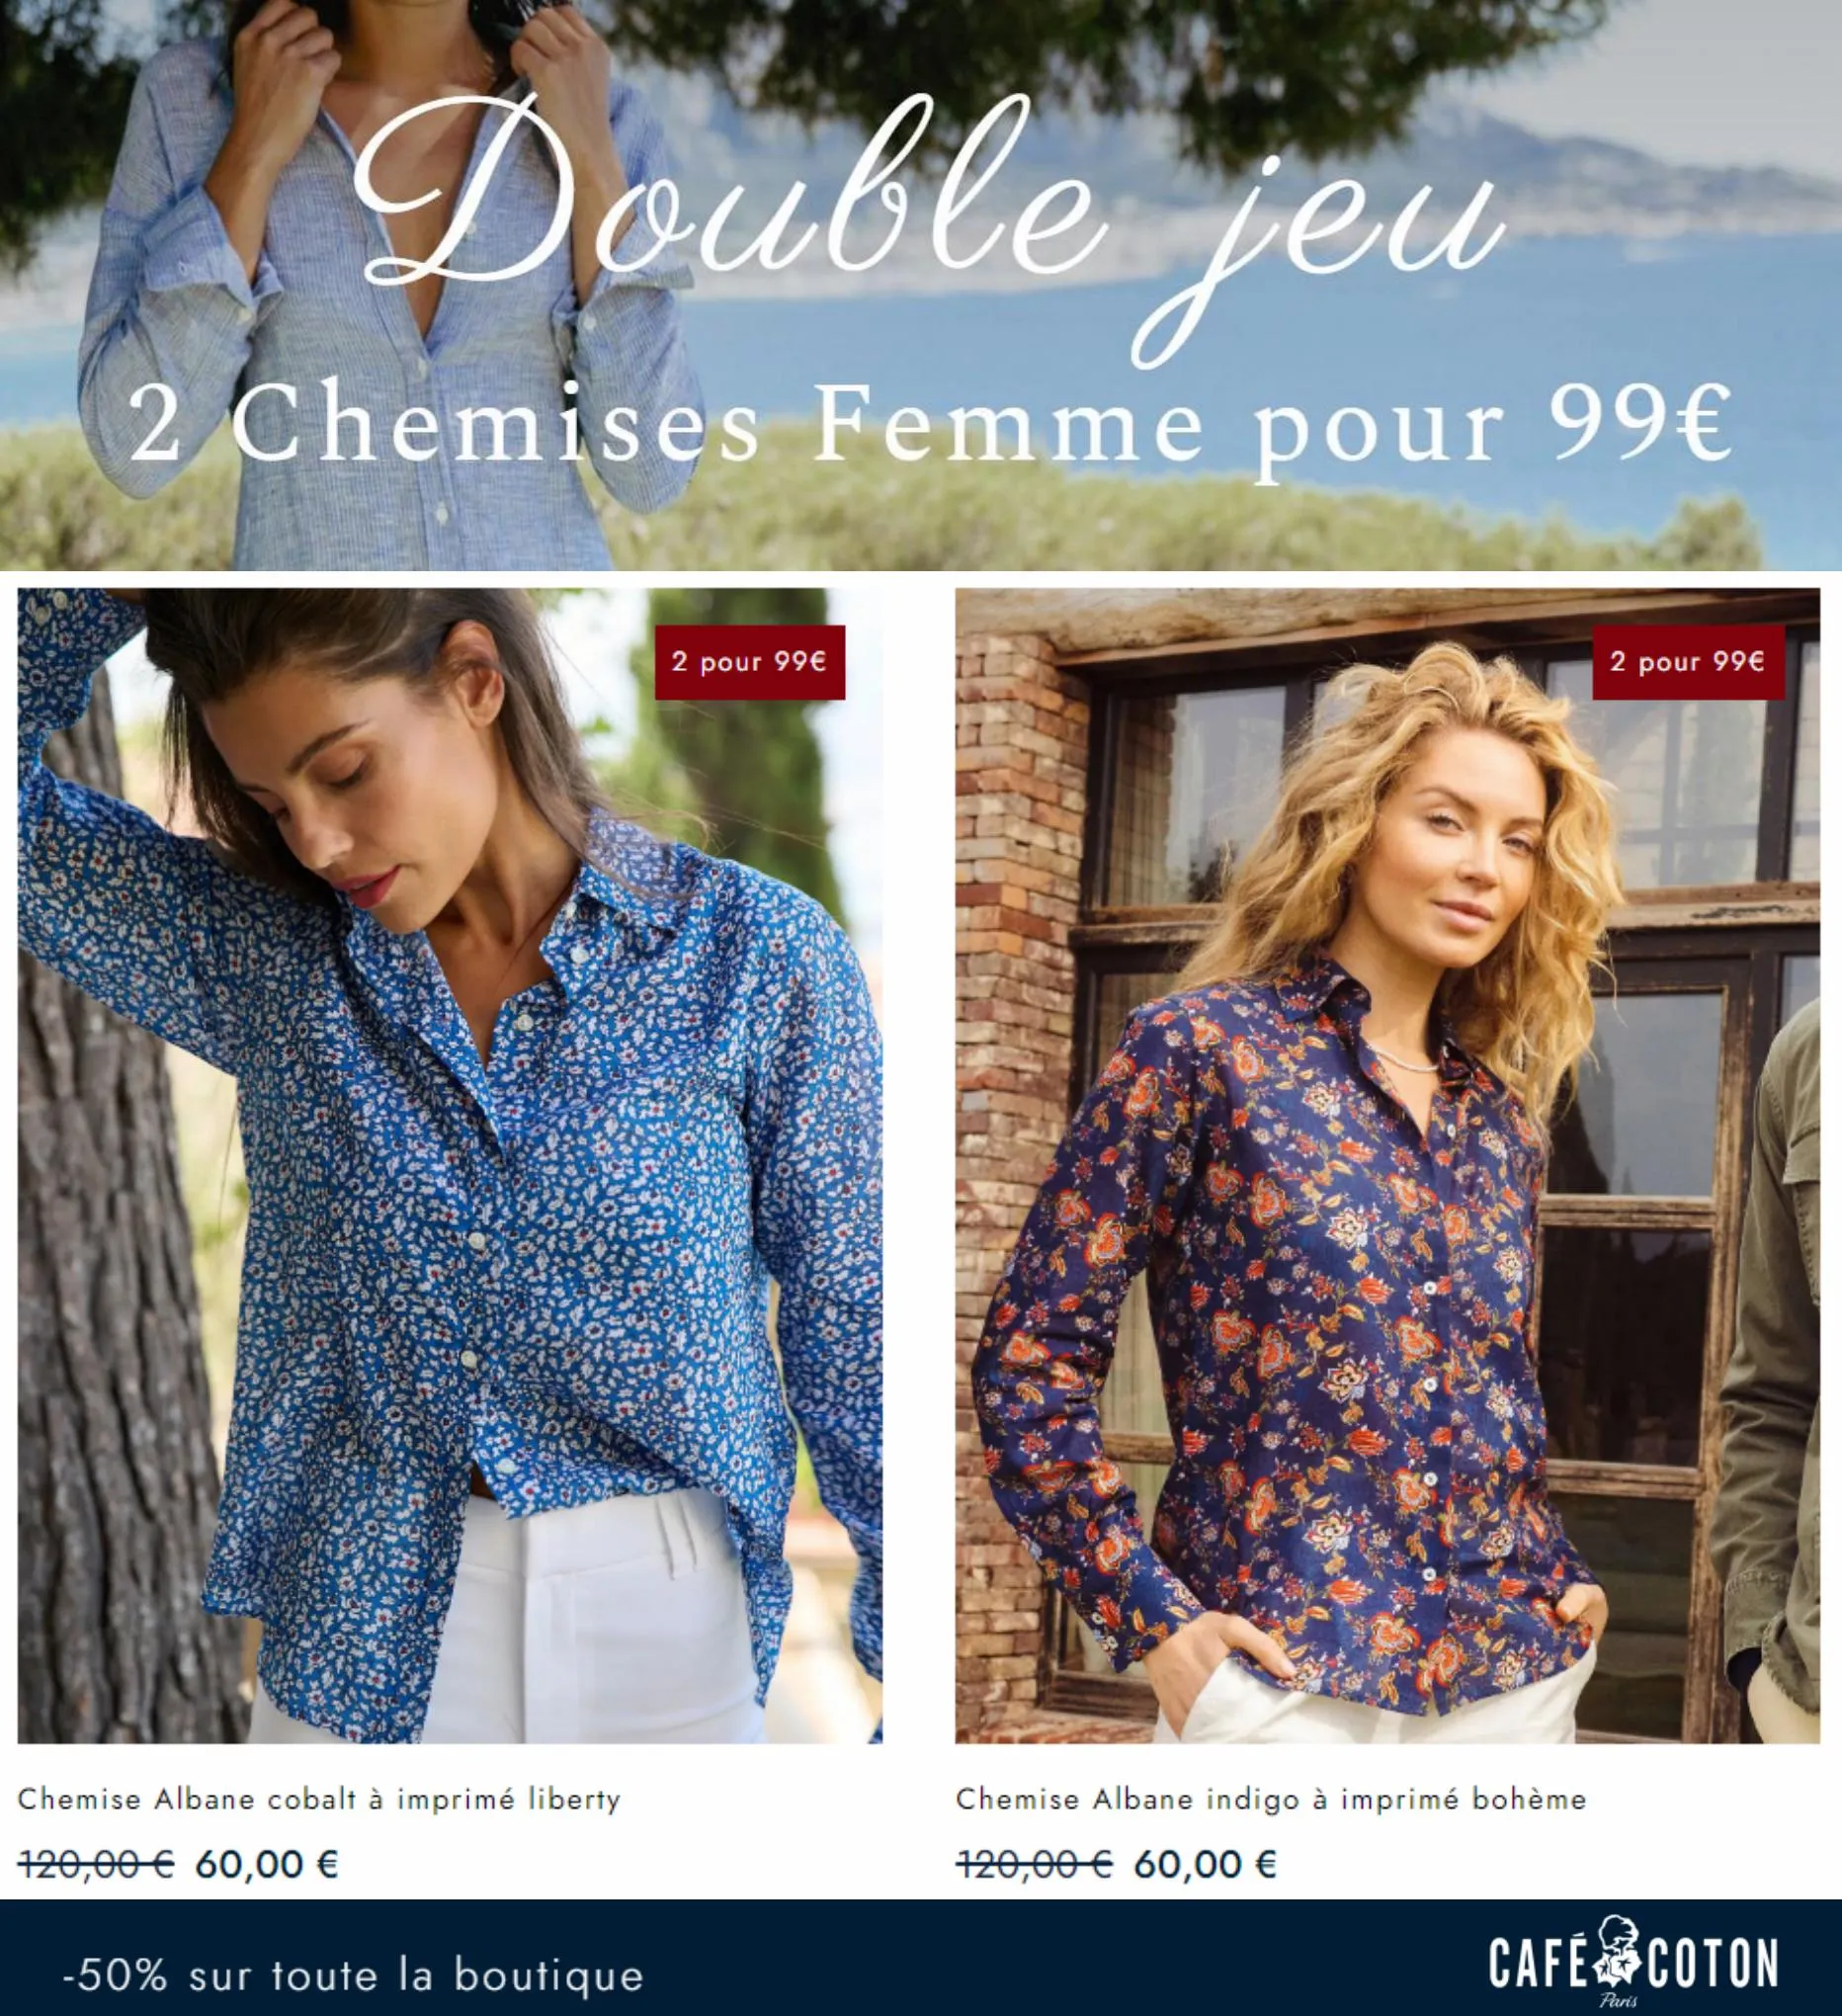 Catalogue 2 Chemises Femme pour 99, page 00006